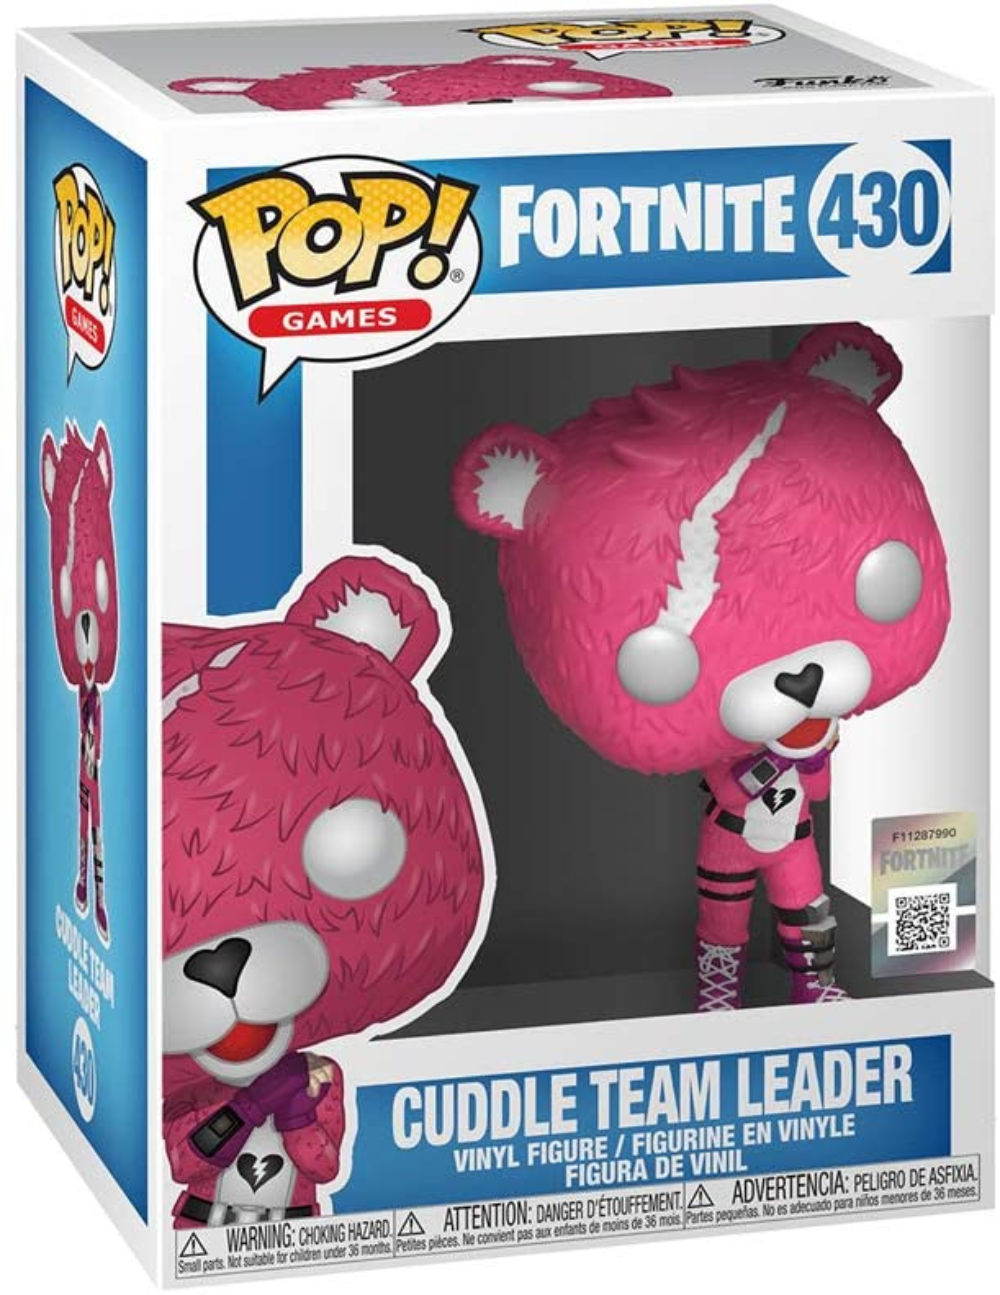 POP! Games: 430 Fortnite, Cuddle Team Leader